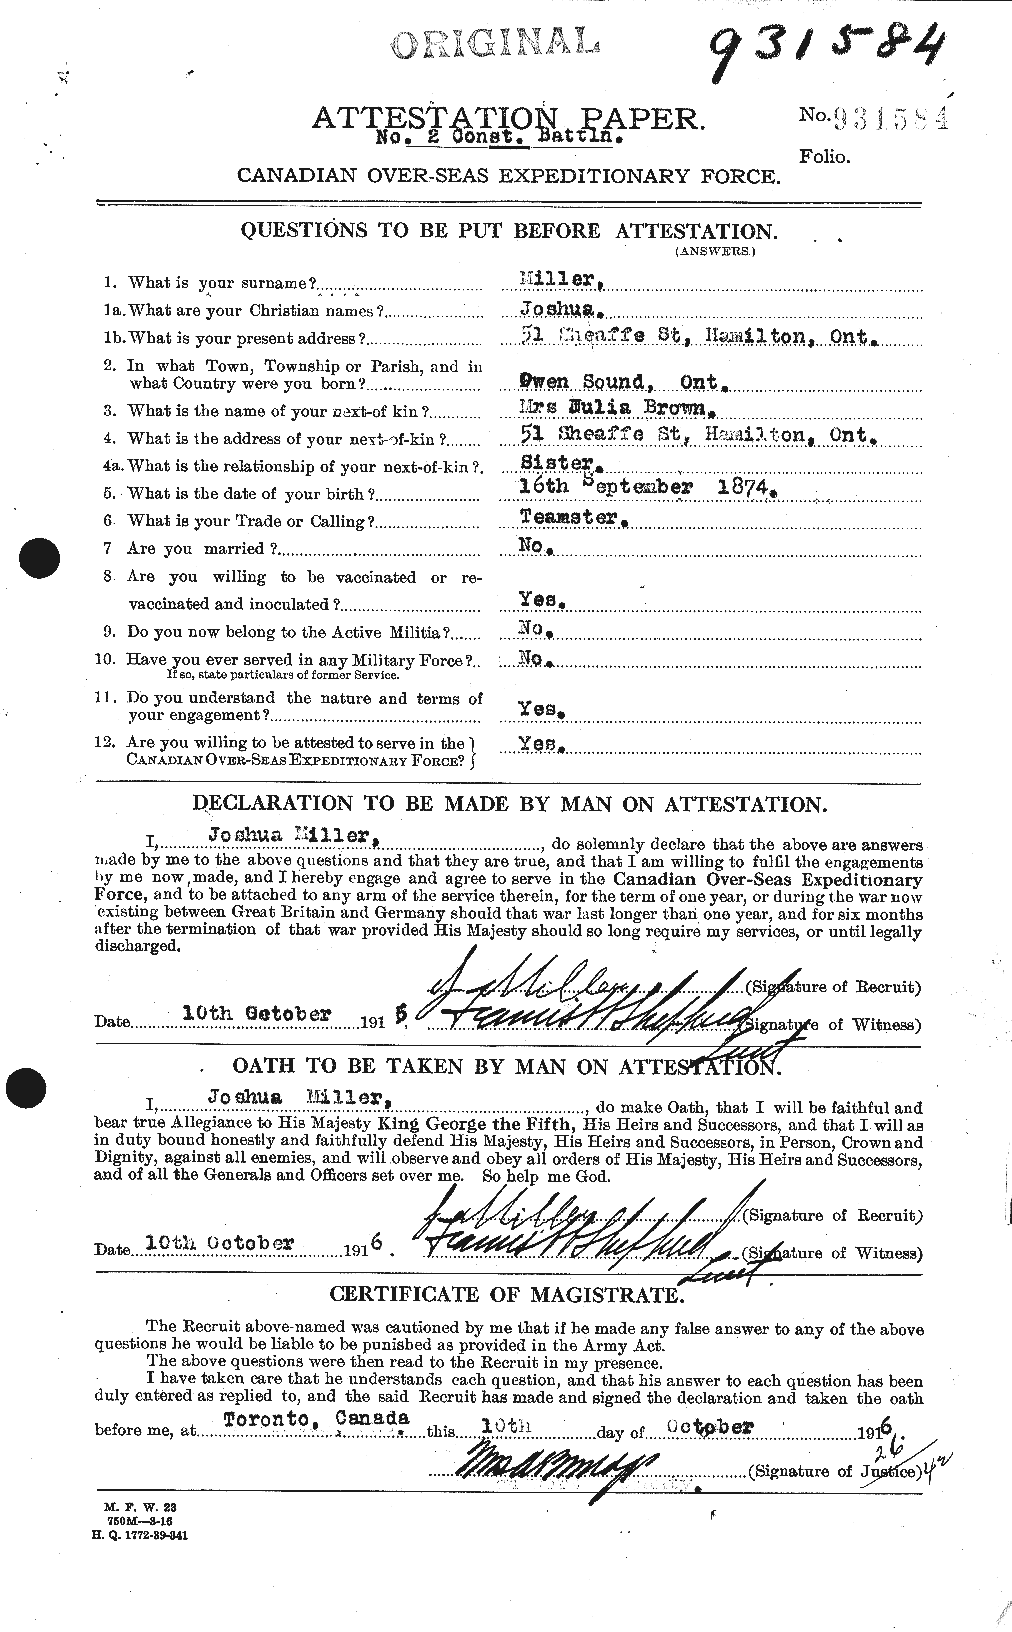 Dossiers du Personnel de la Première Guerre mondiale - CEC 499475a